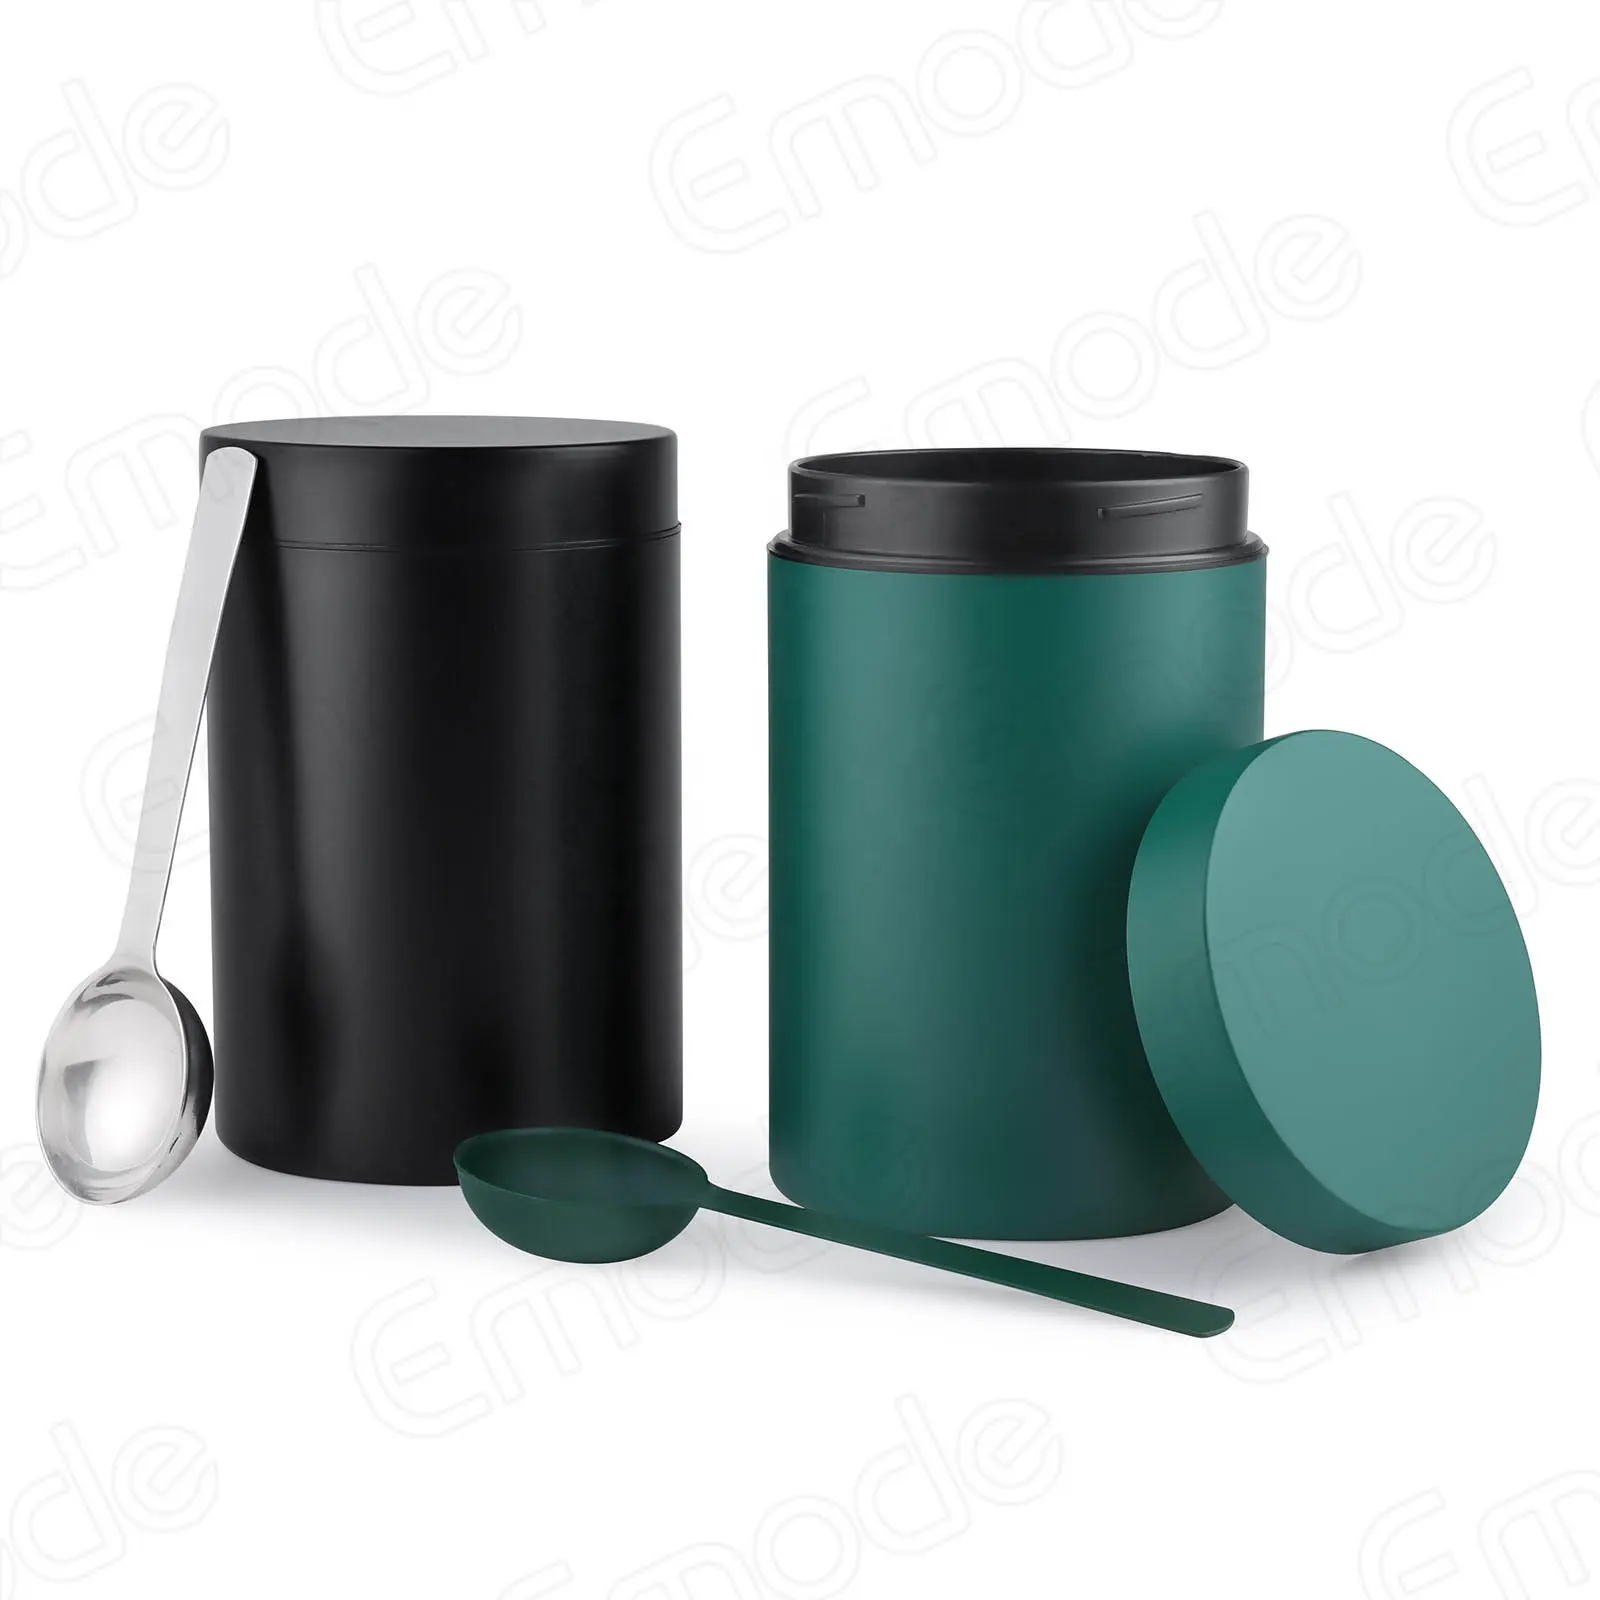 Спортивная металлическая канистра Emode, круглые жестяные банки, зеленый контейнер с закрученной крышкой, для хранения чая, кофе и чайных пакетиков